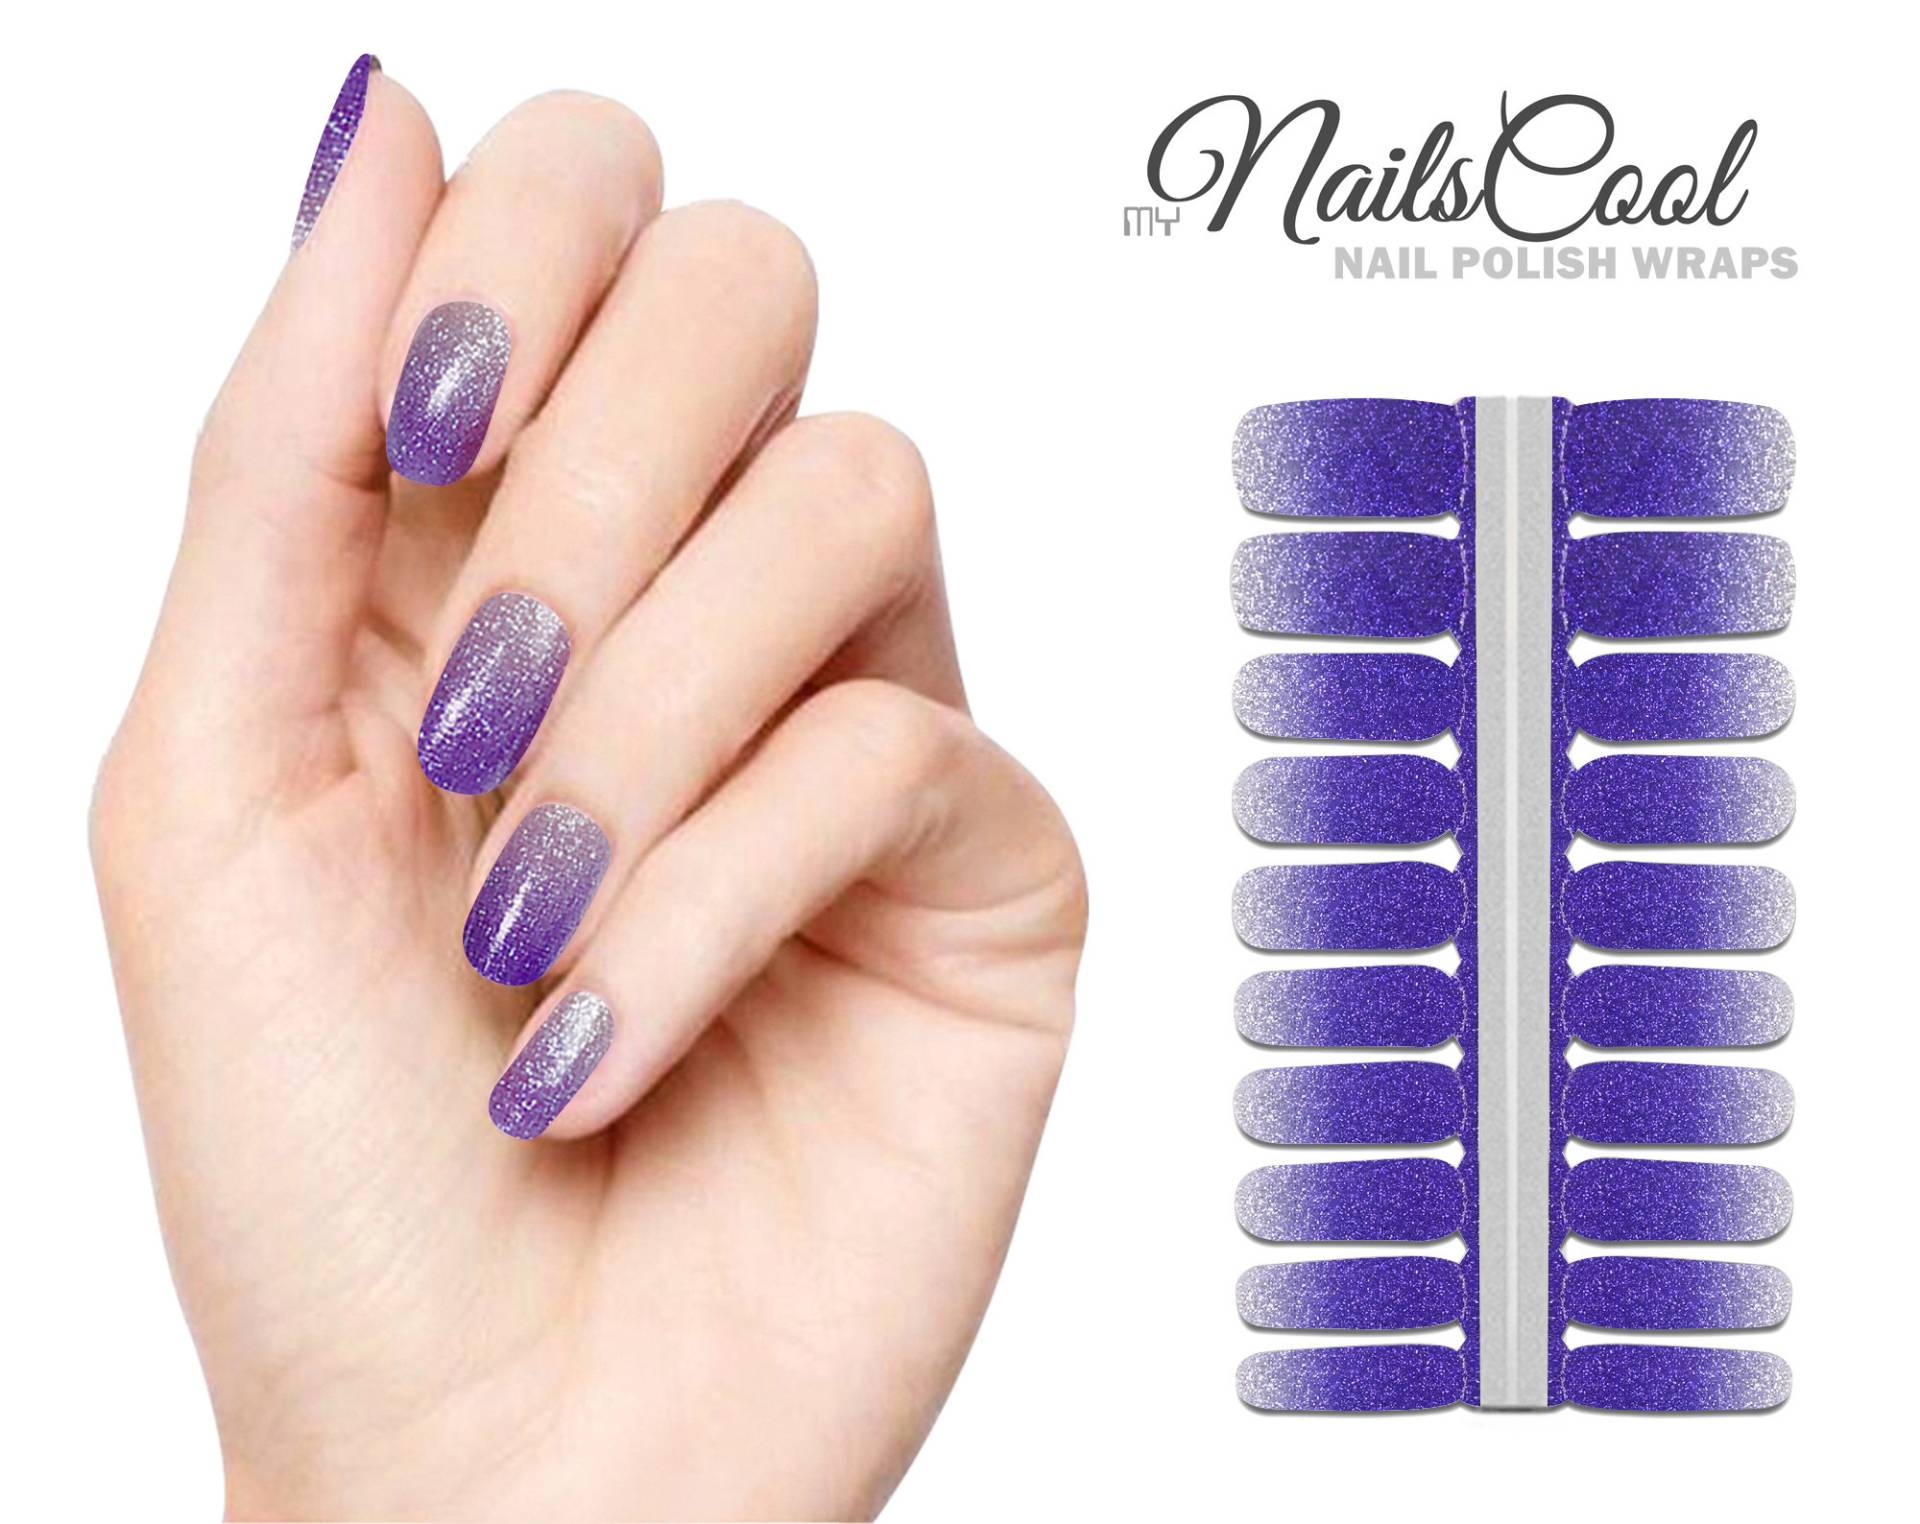 Dark Purple Farbe Silber Glitzer Farbverlauf Echte Nagellack Streifen Nailart Wraps Street Art 20 Strips von myNailsCool